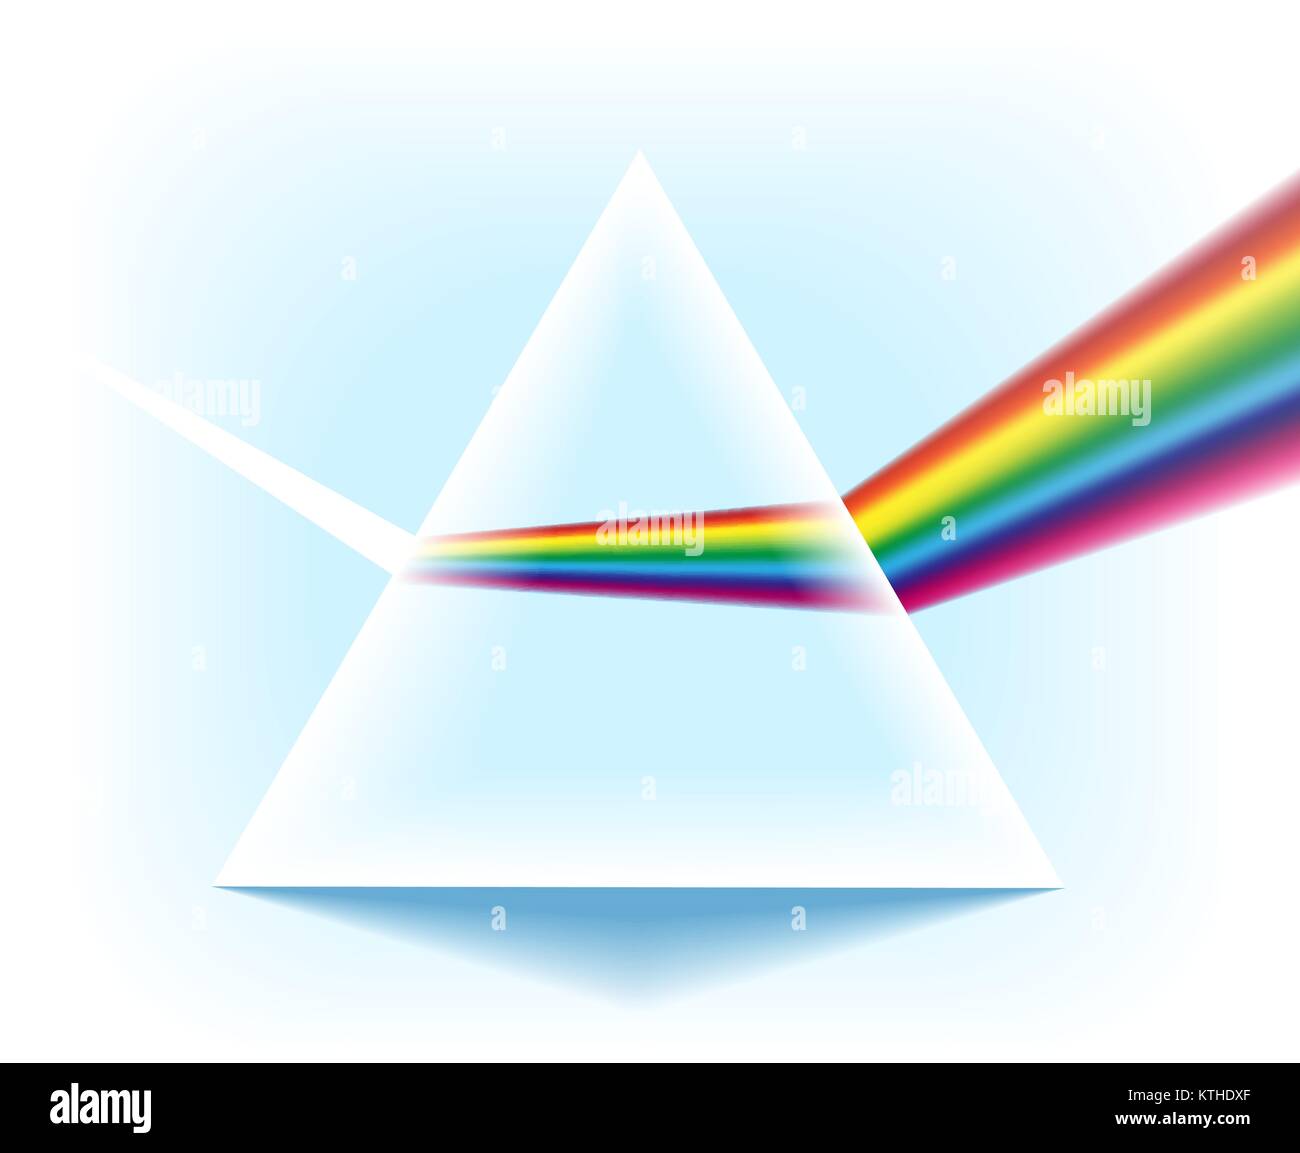 Spektrum Prisma. Glas dreieckige Pyramide mit optischen Licht Effekt auf  weißem Hintergrund, Vector Illustration Stock-Vektorgrafik - Alamy